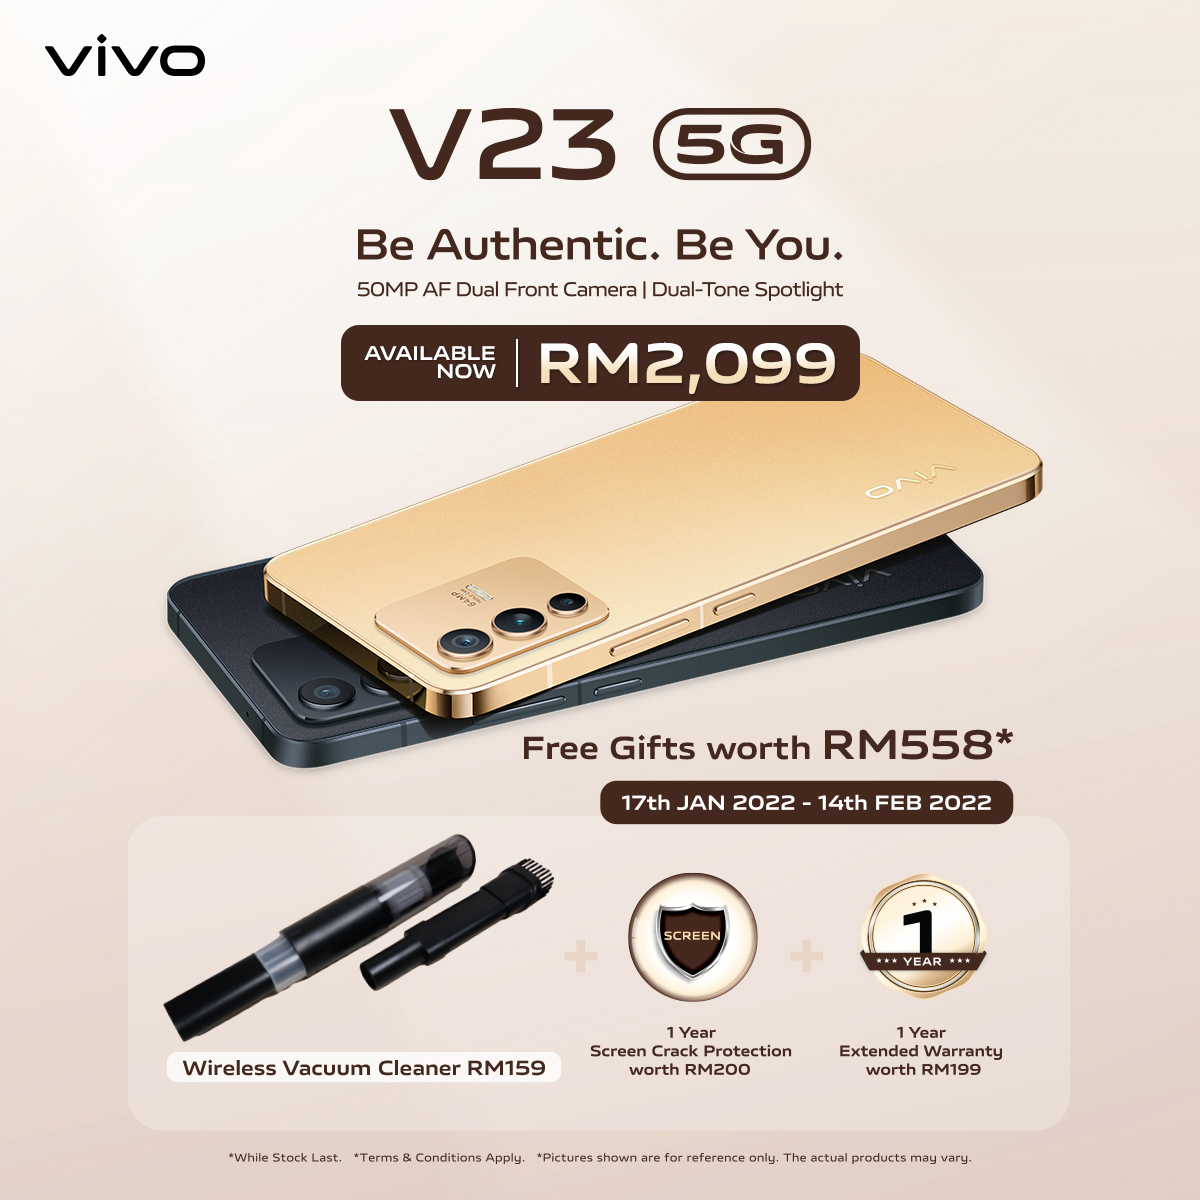 vivo V23 5G kini rasmi di Malaysia pada harga RM 2,099 - panel belakang boleh bertukar warna 19